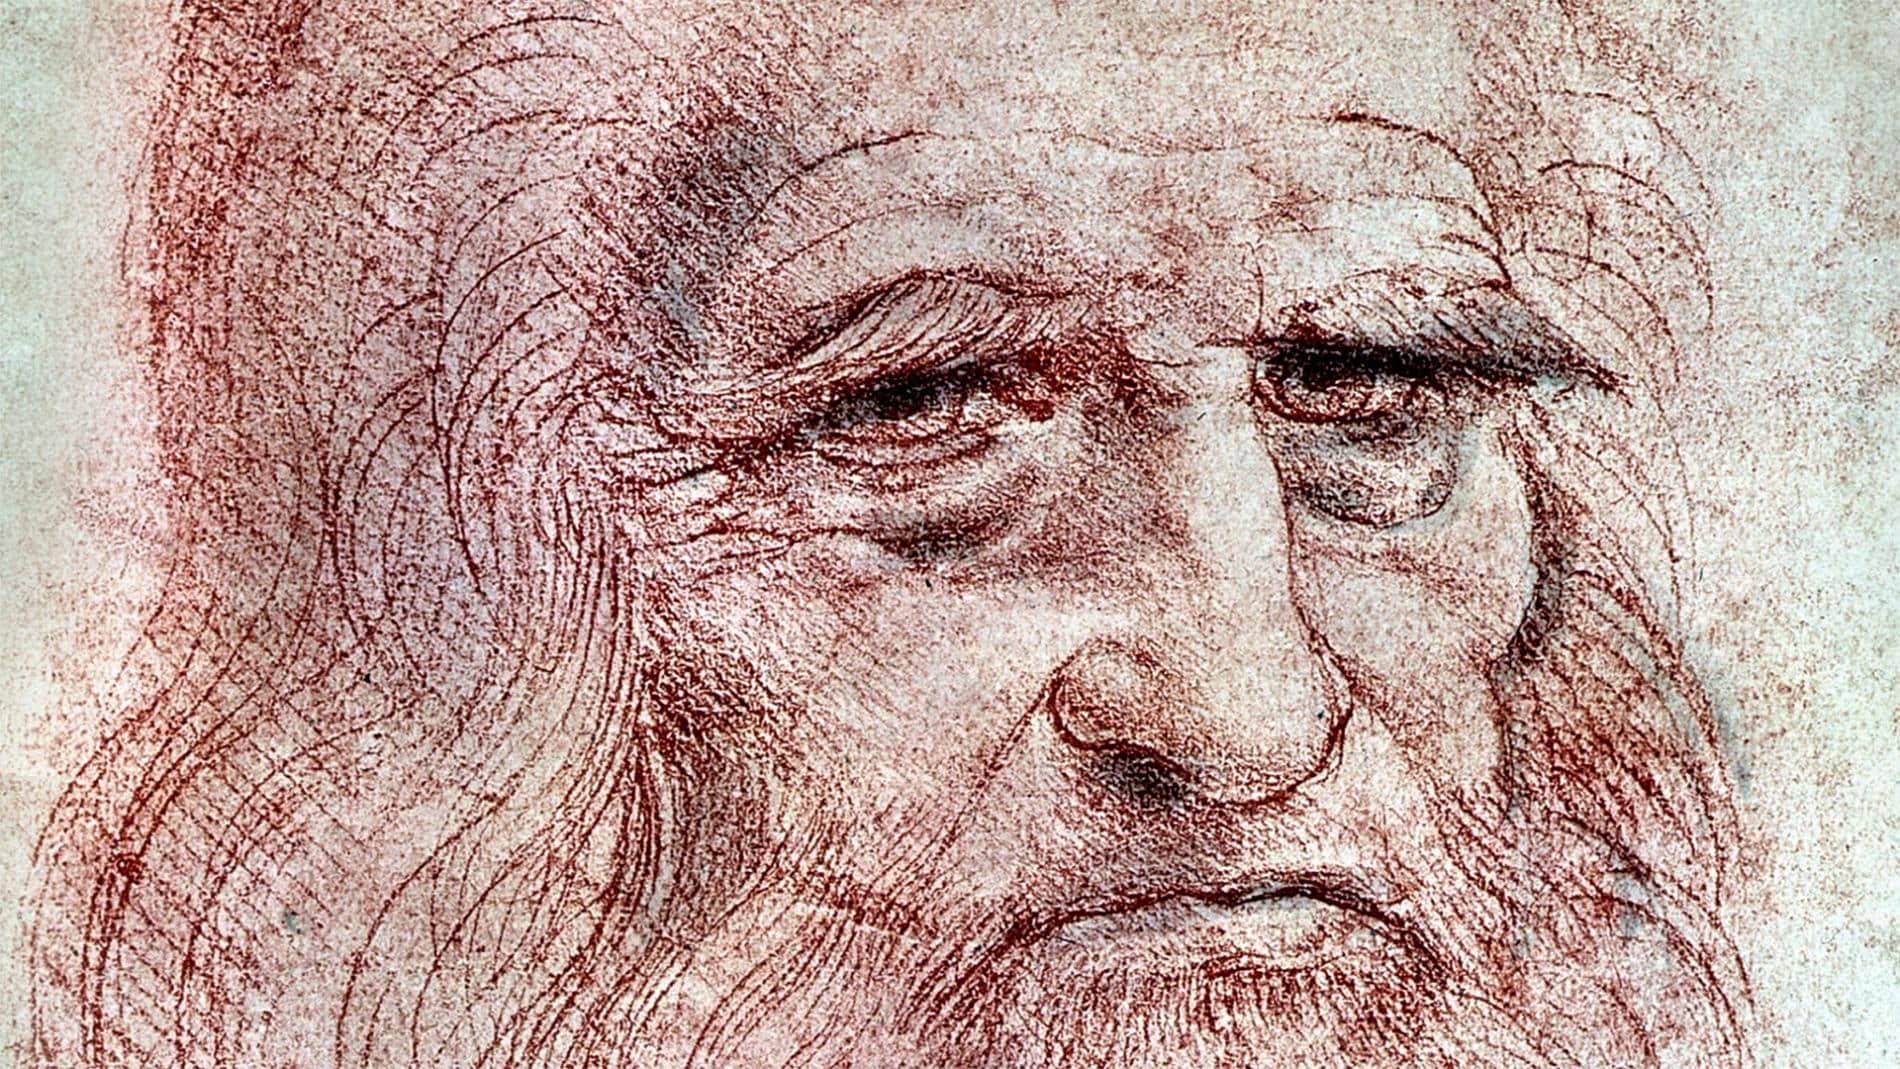 Was Leonardo’s mother a Circassian slave?